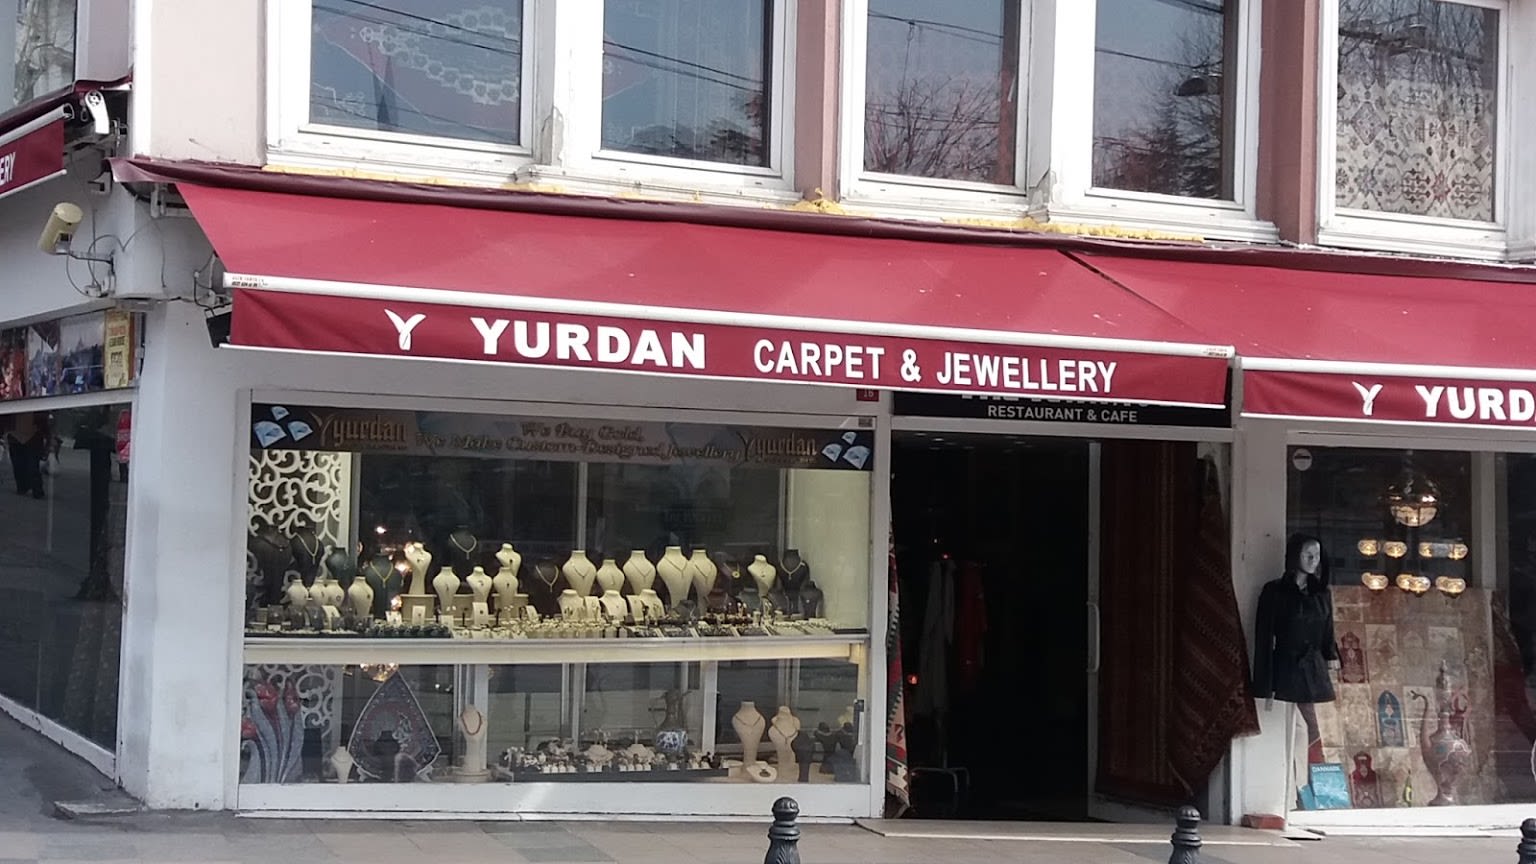 Yurdan Carpet & Jewelery